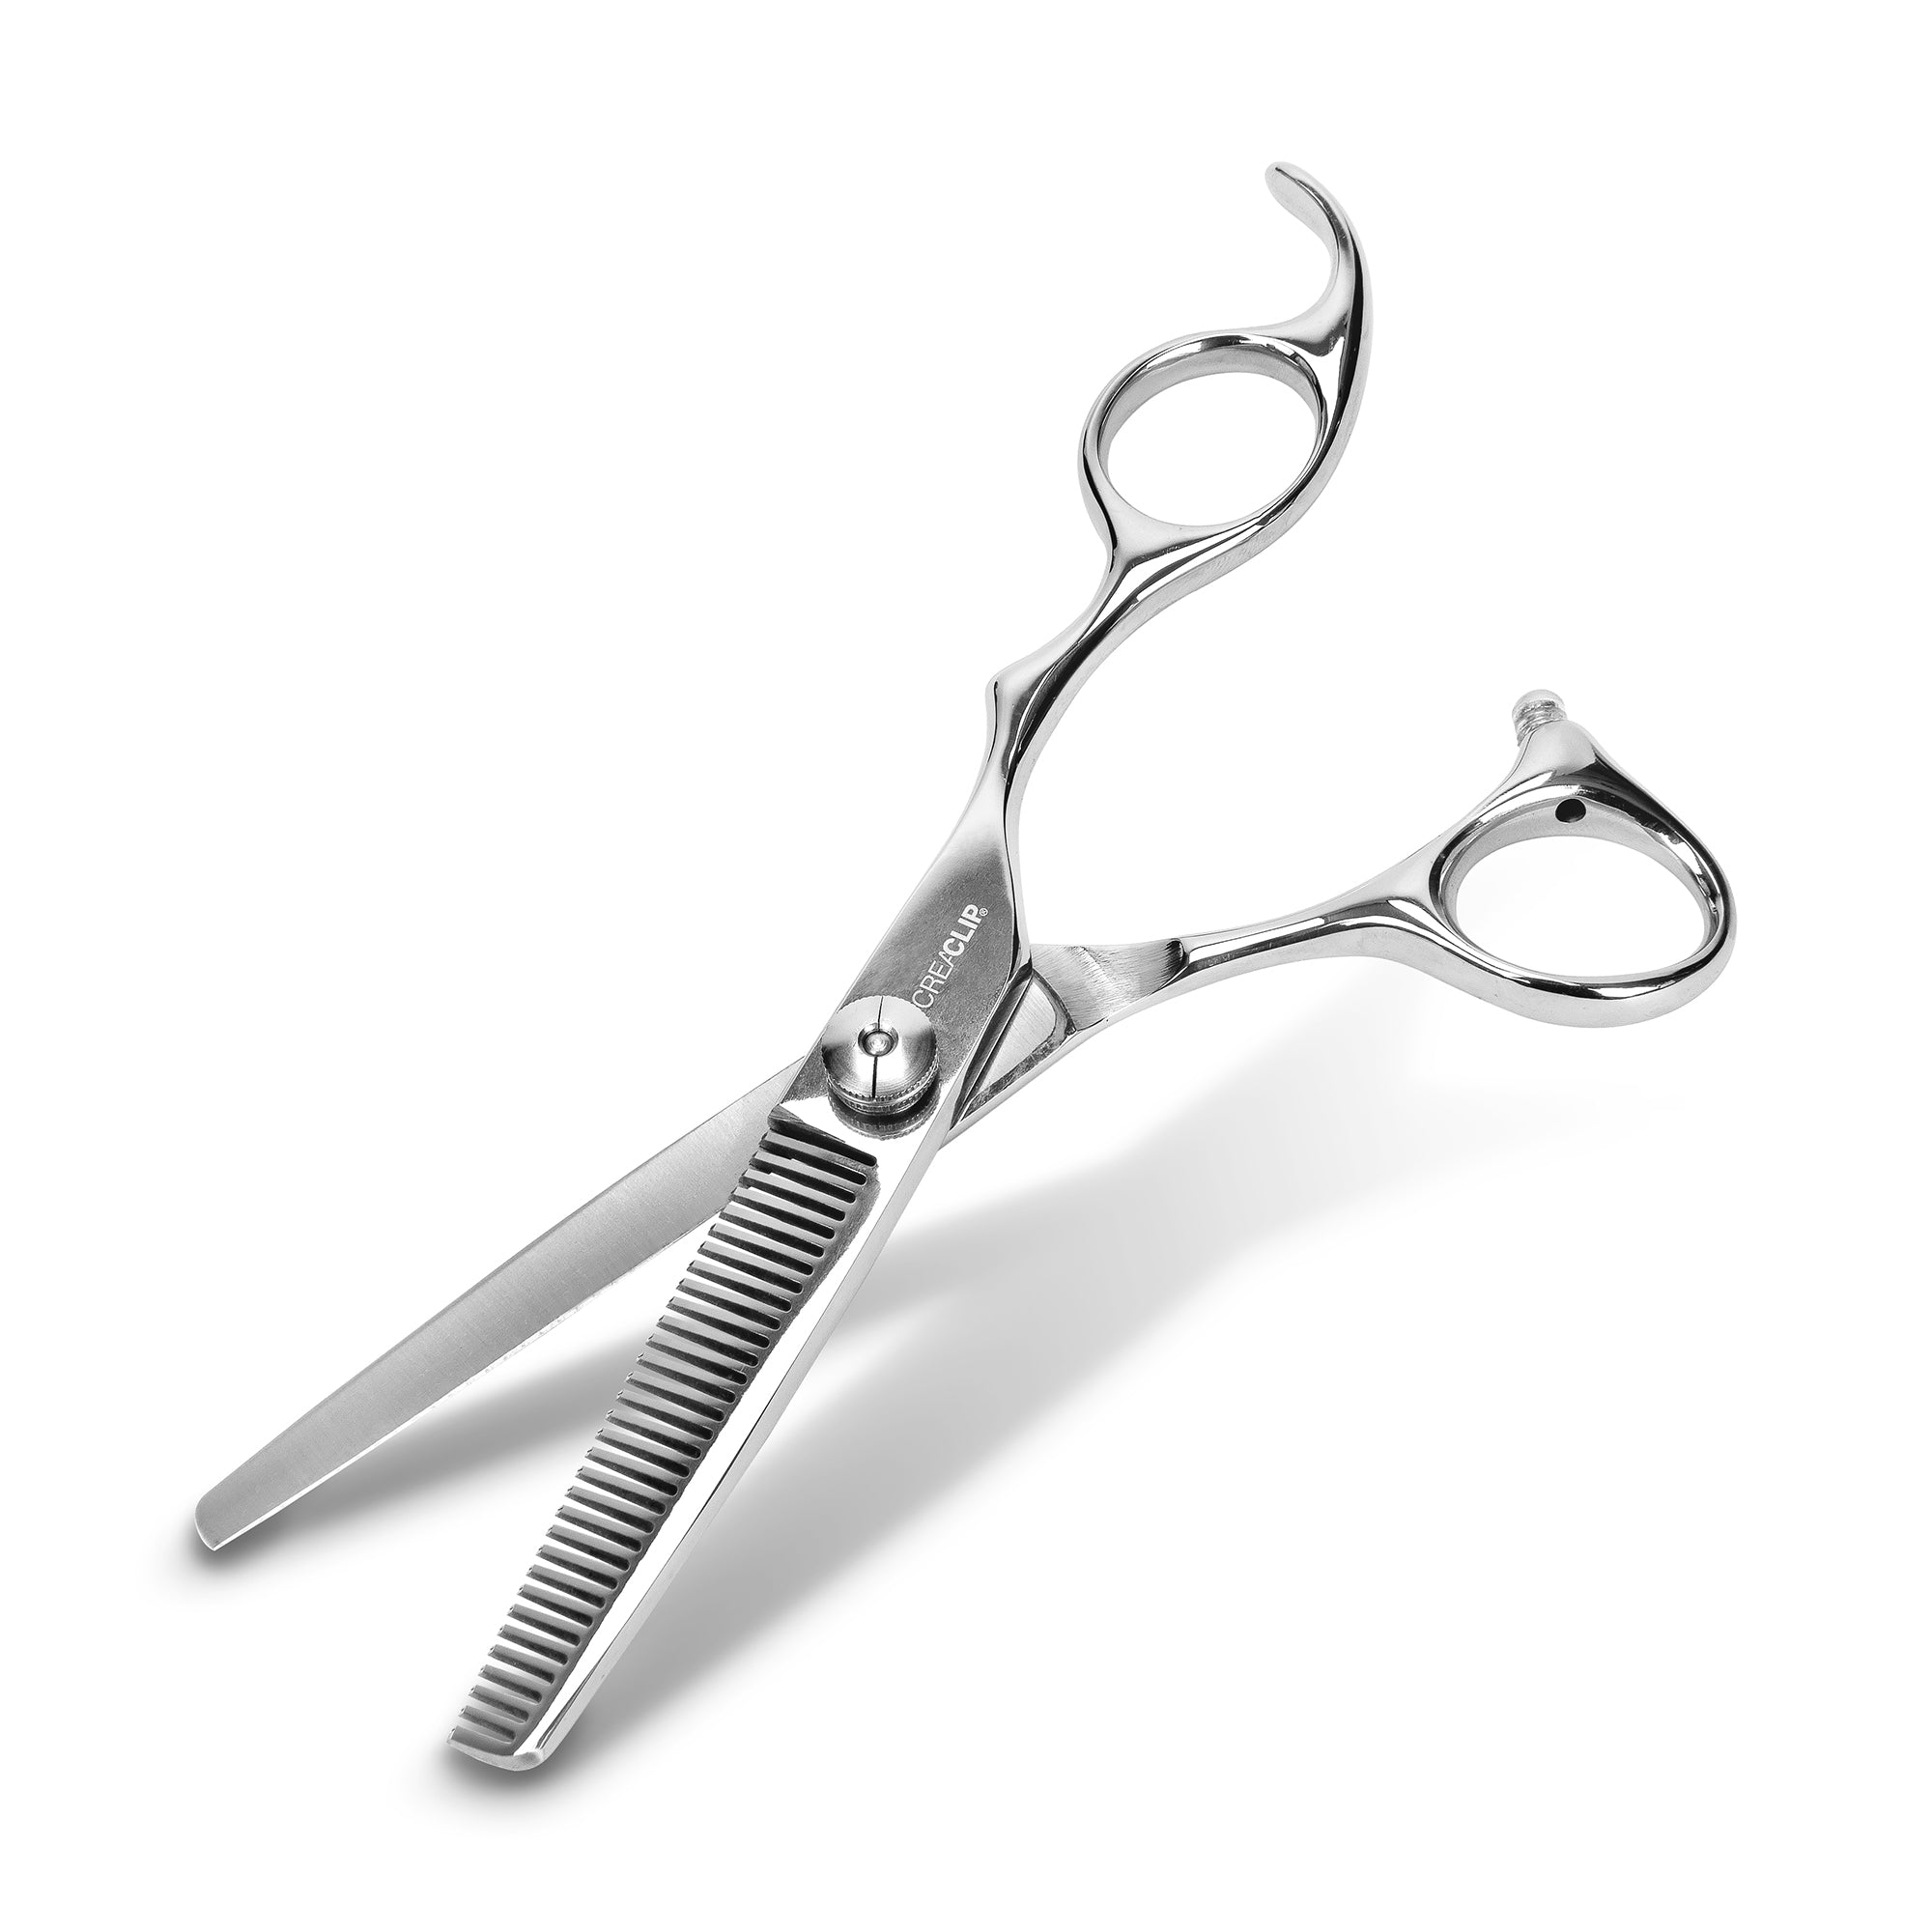  Original CreaClip Bangs & Scissors Hair Cutting Tool - As seen  on Shark Tank - Fringe Bangs Trimming Hair Cutting Guide, Comb Hairstyle  Tool, Layers Kids Hair Cut Hair Cutting